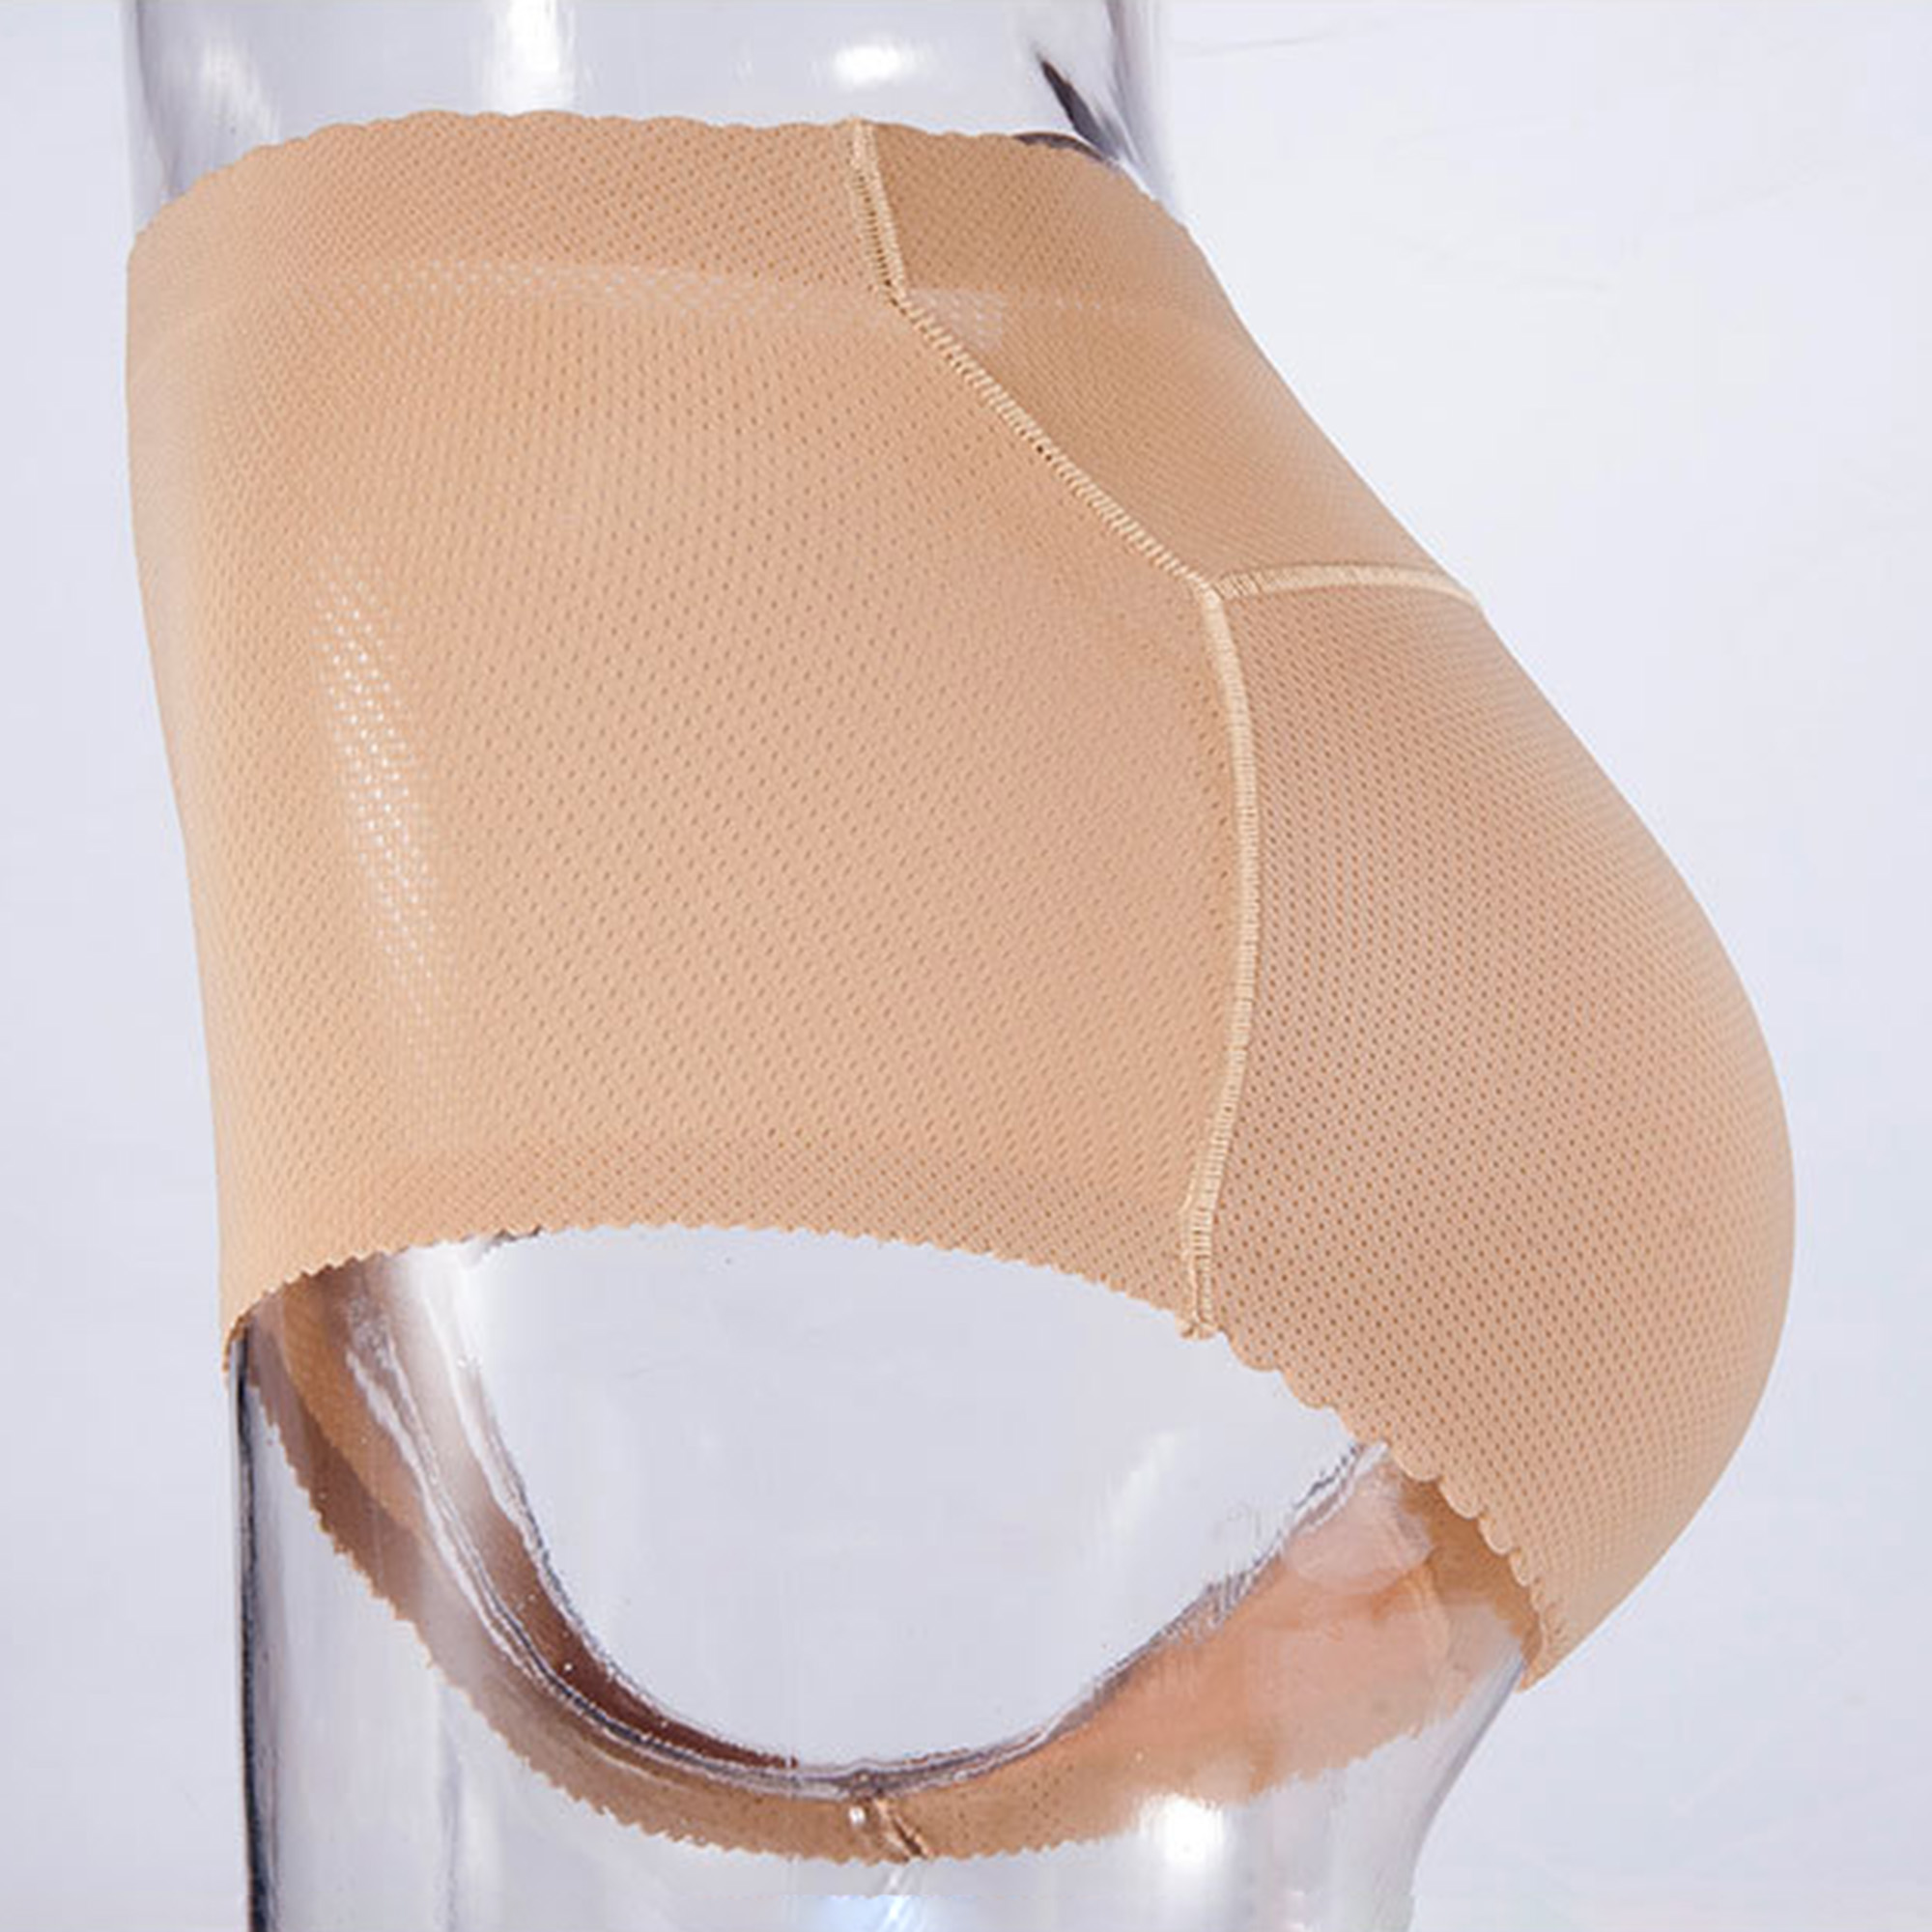 Hip Enhancer Breathable Padded Pant for Fake Buttocks  Lovebird Lingerie